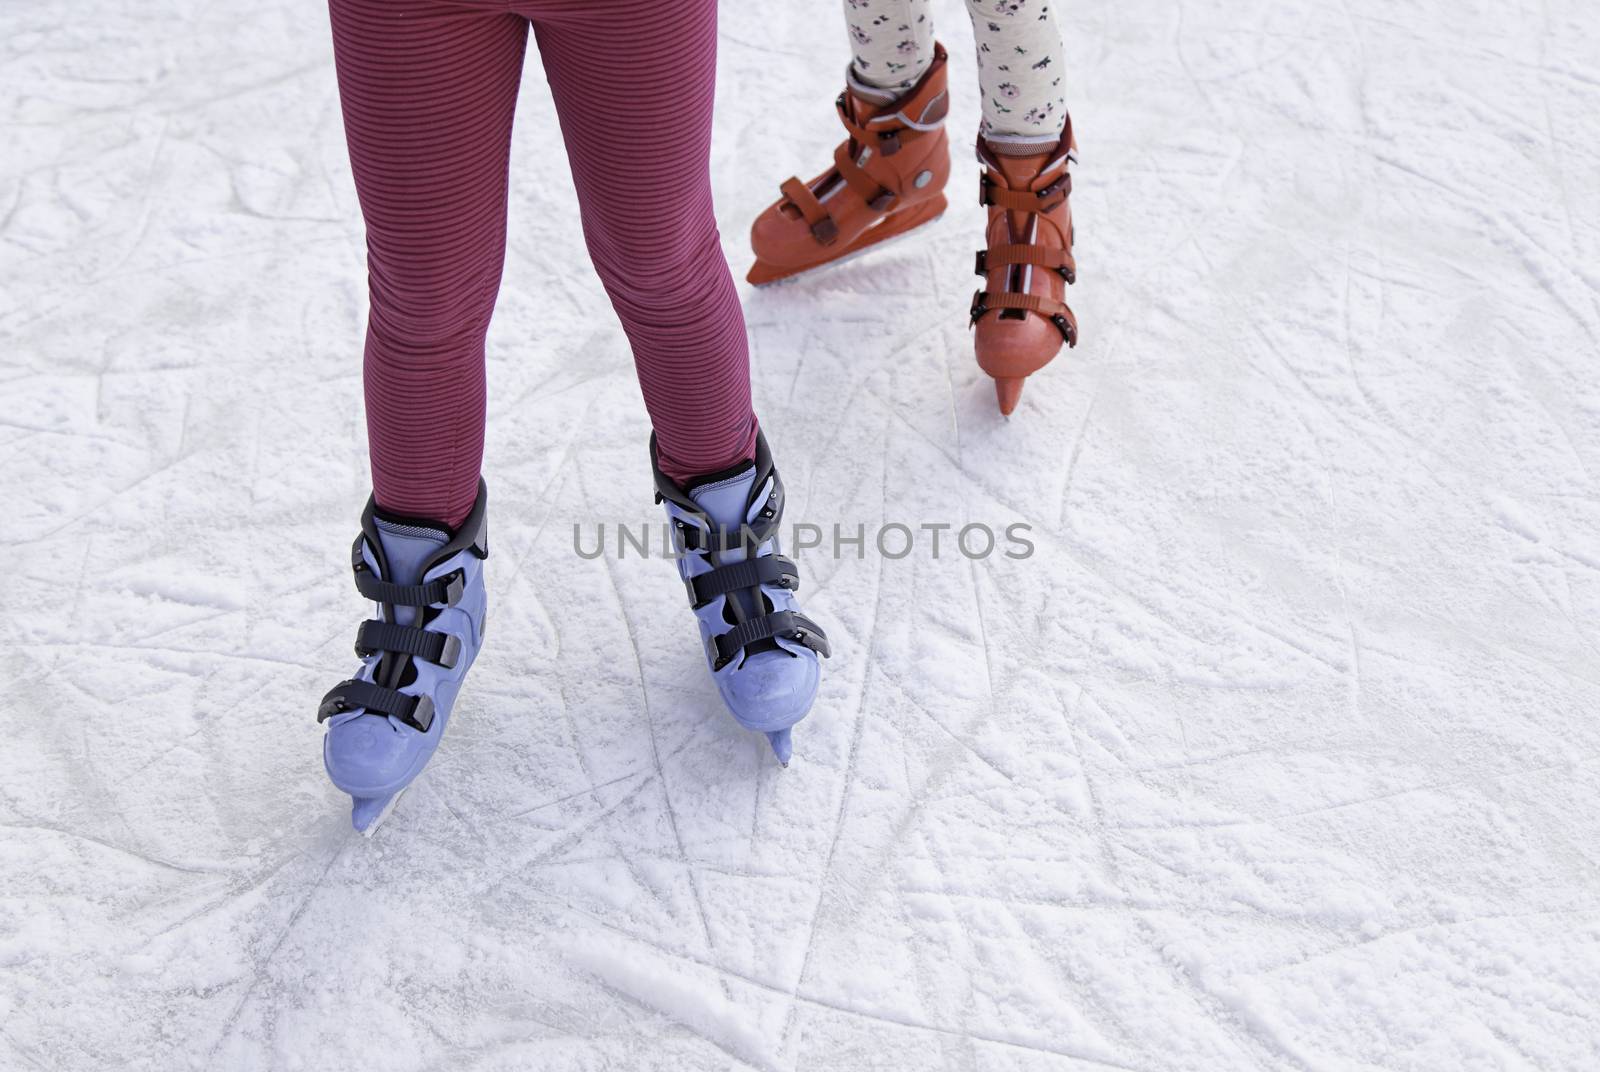 People ice skating by esebene